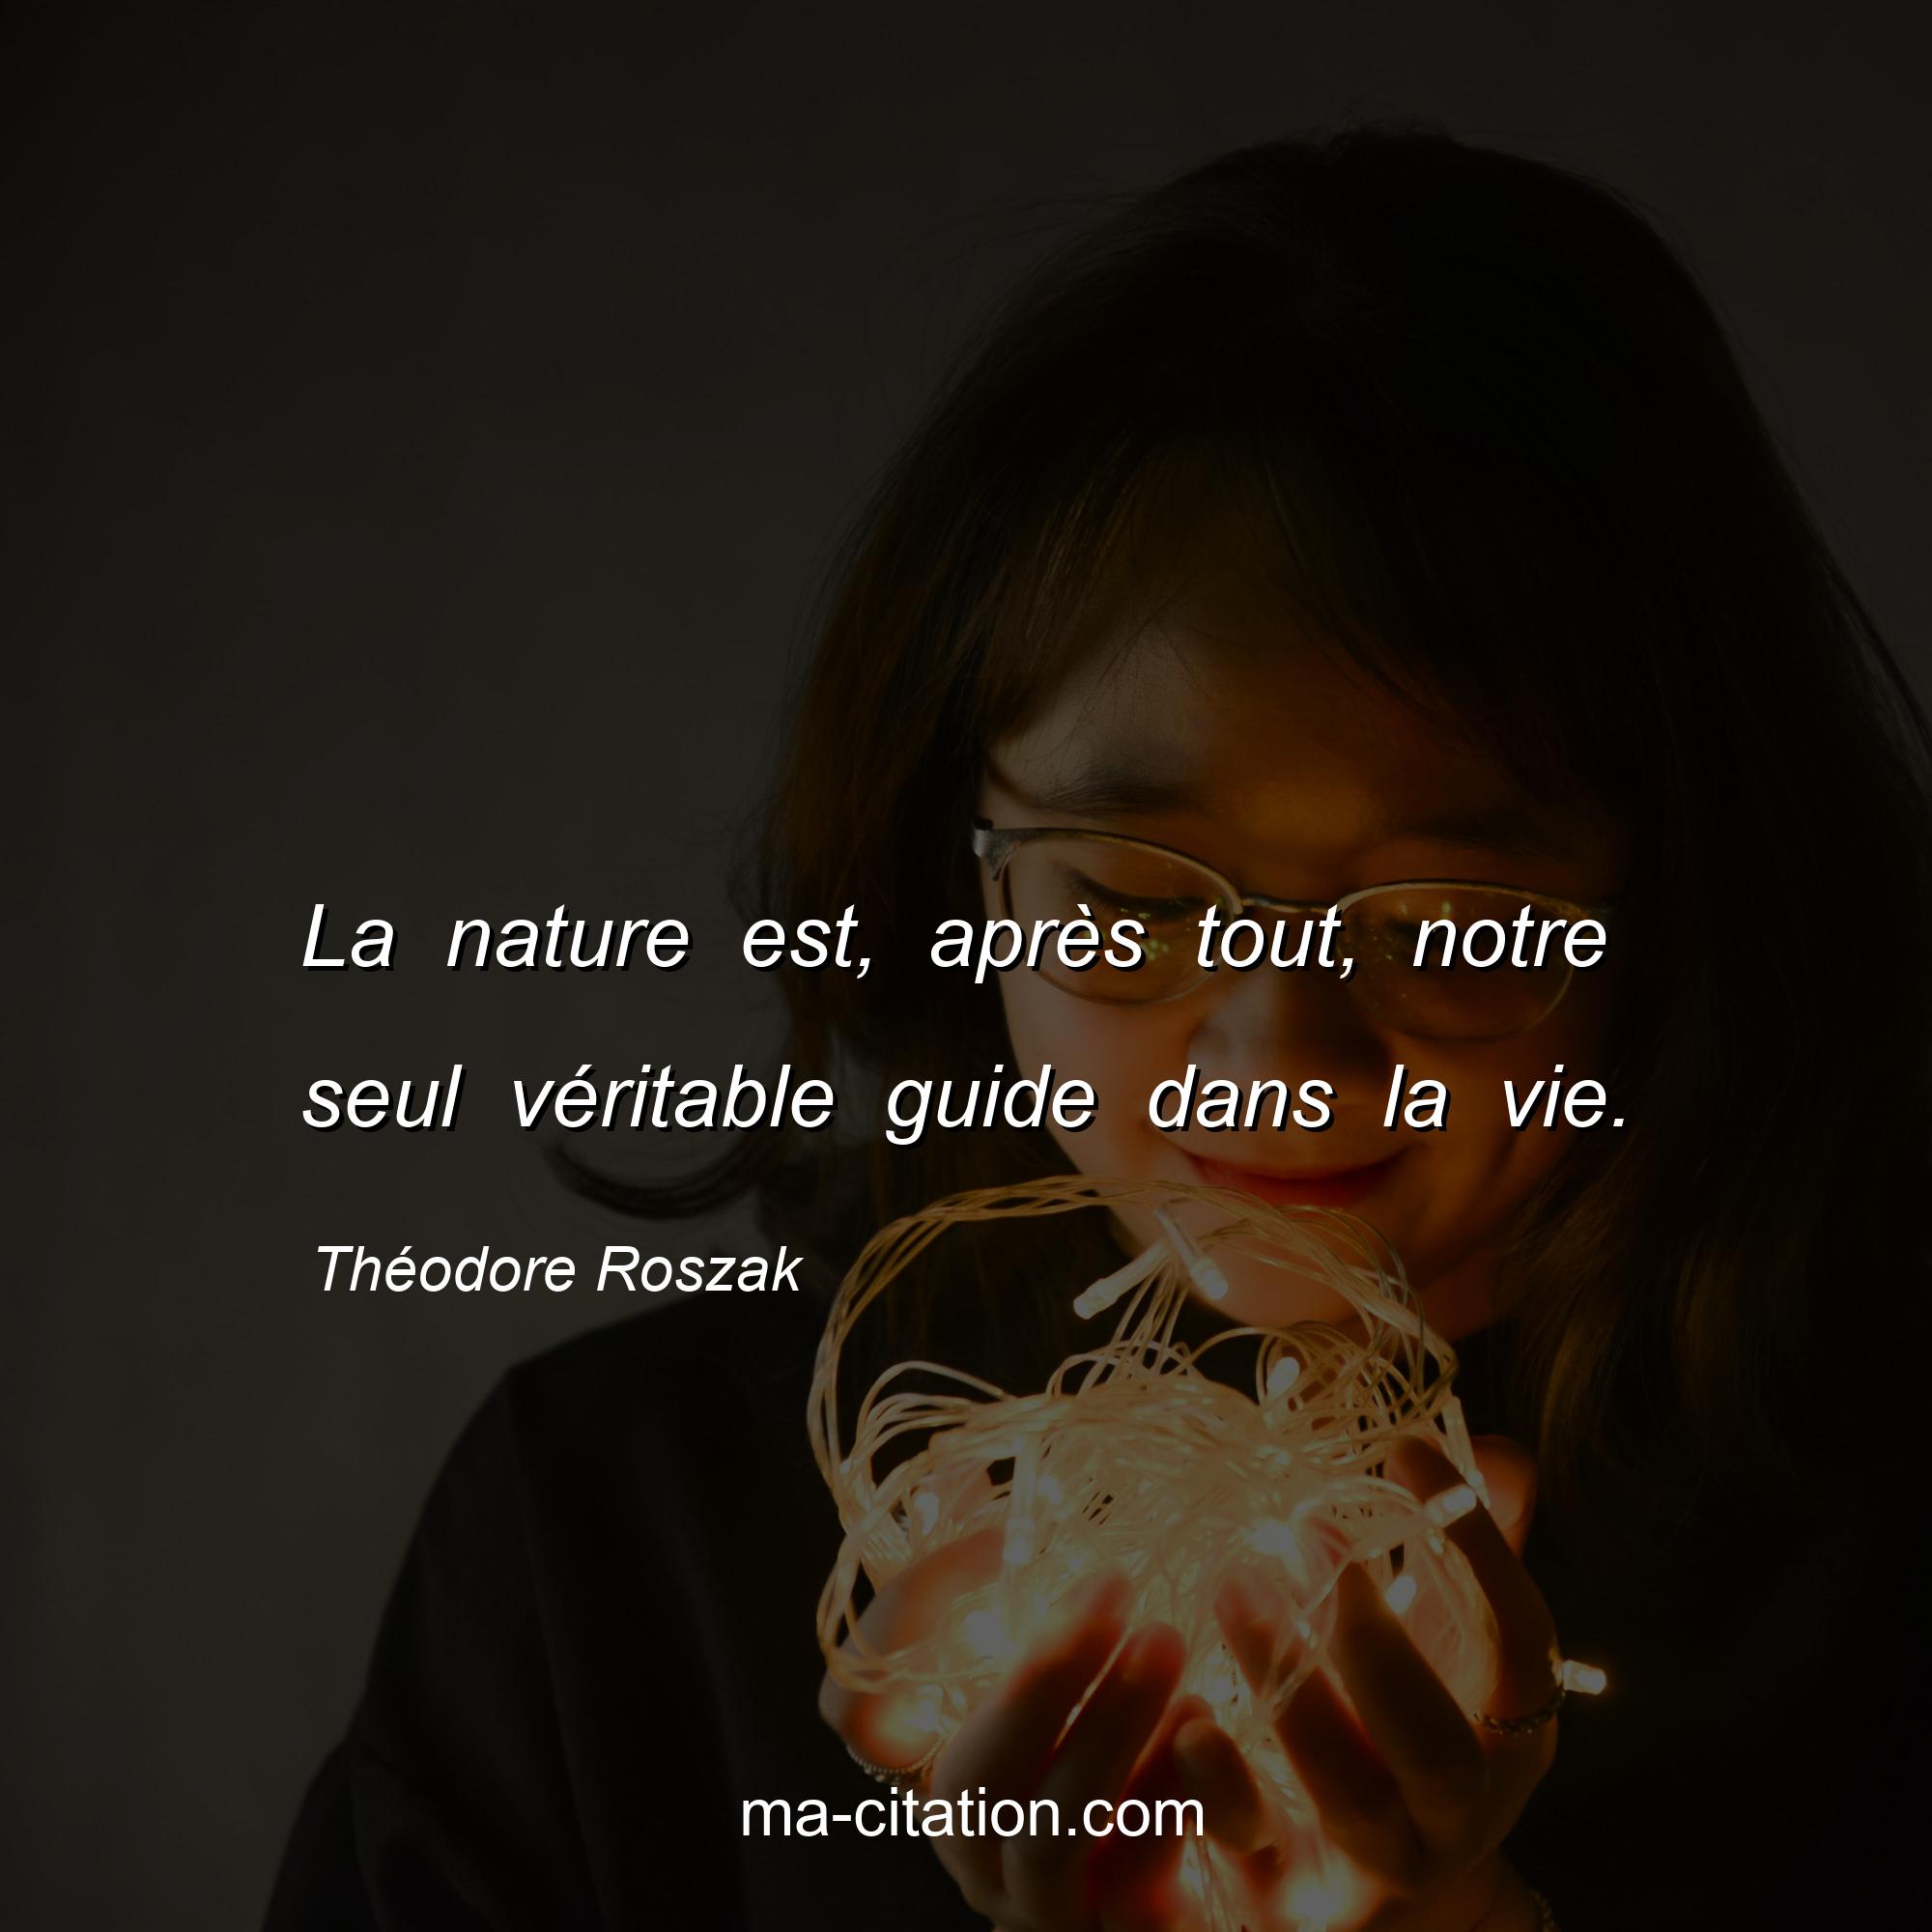 Théodore Roszak : La nature est, après tout, notre seul véritable guide dans la vie.